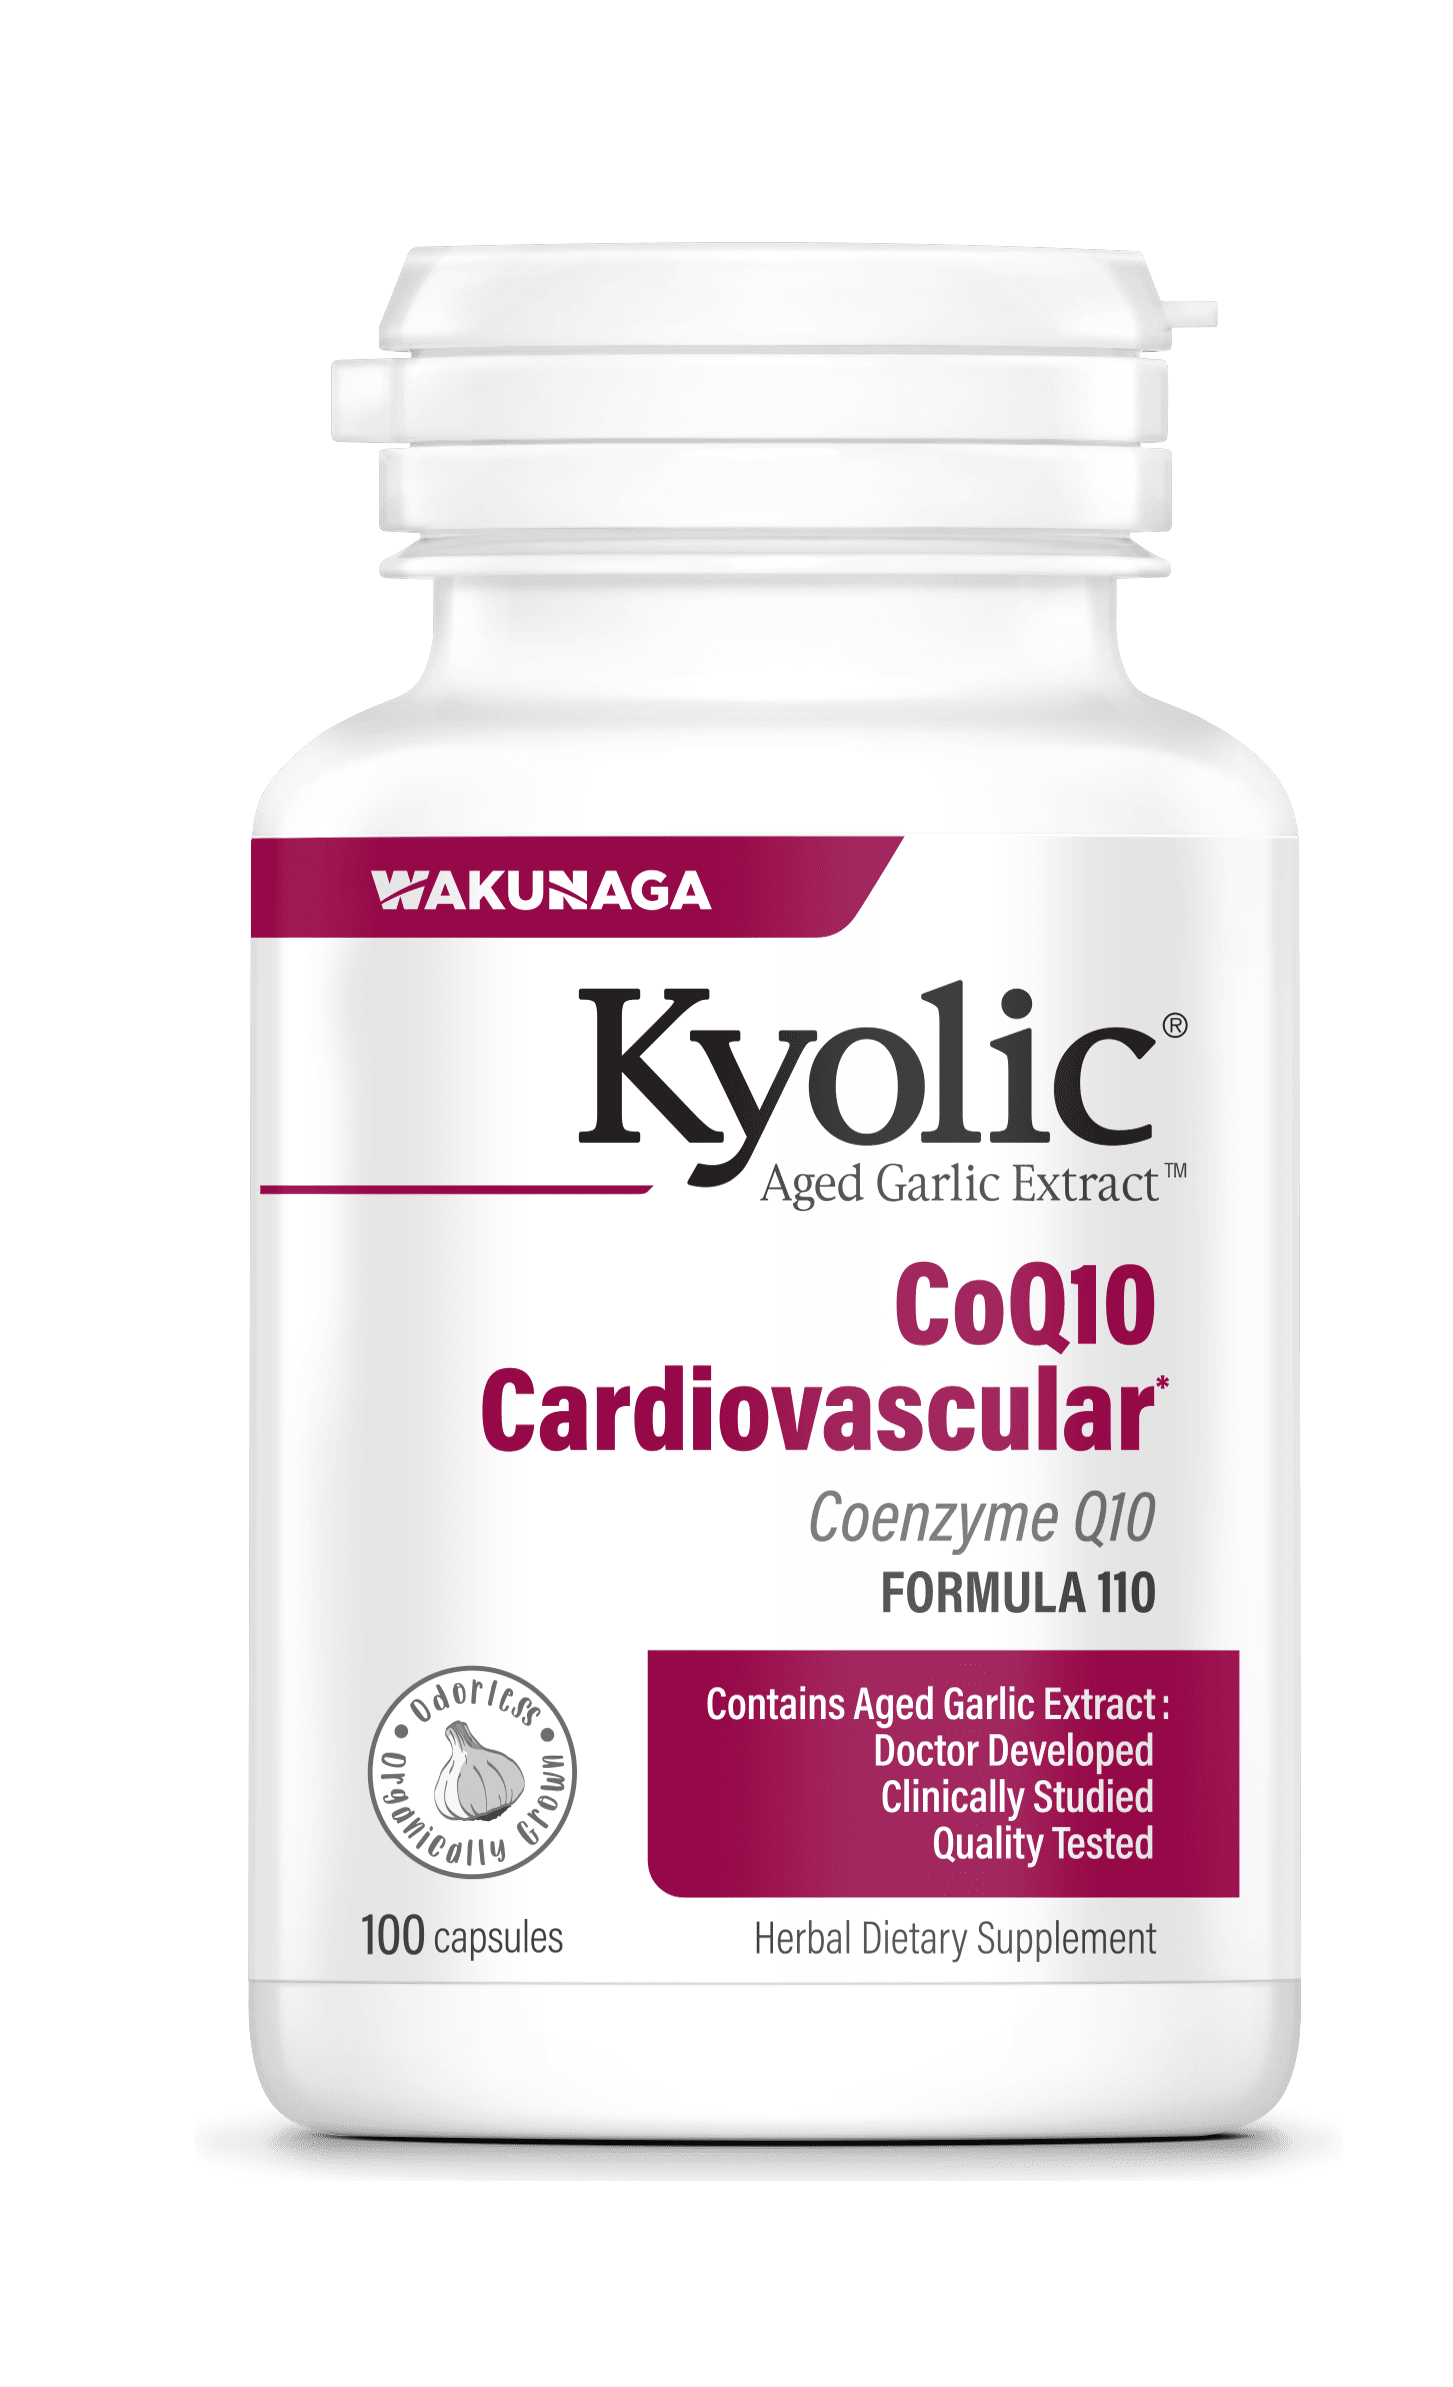 Kyolic® AGE CoQ10 Cardiovascular Formula 110